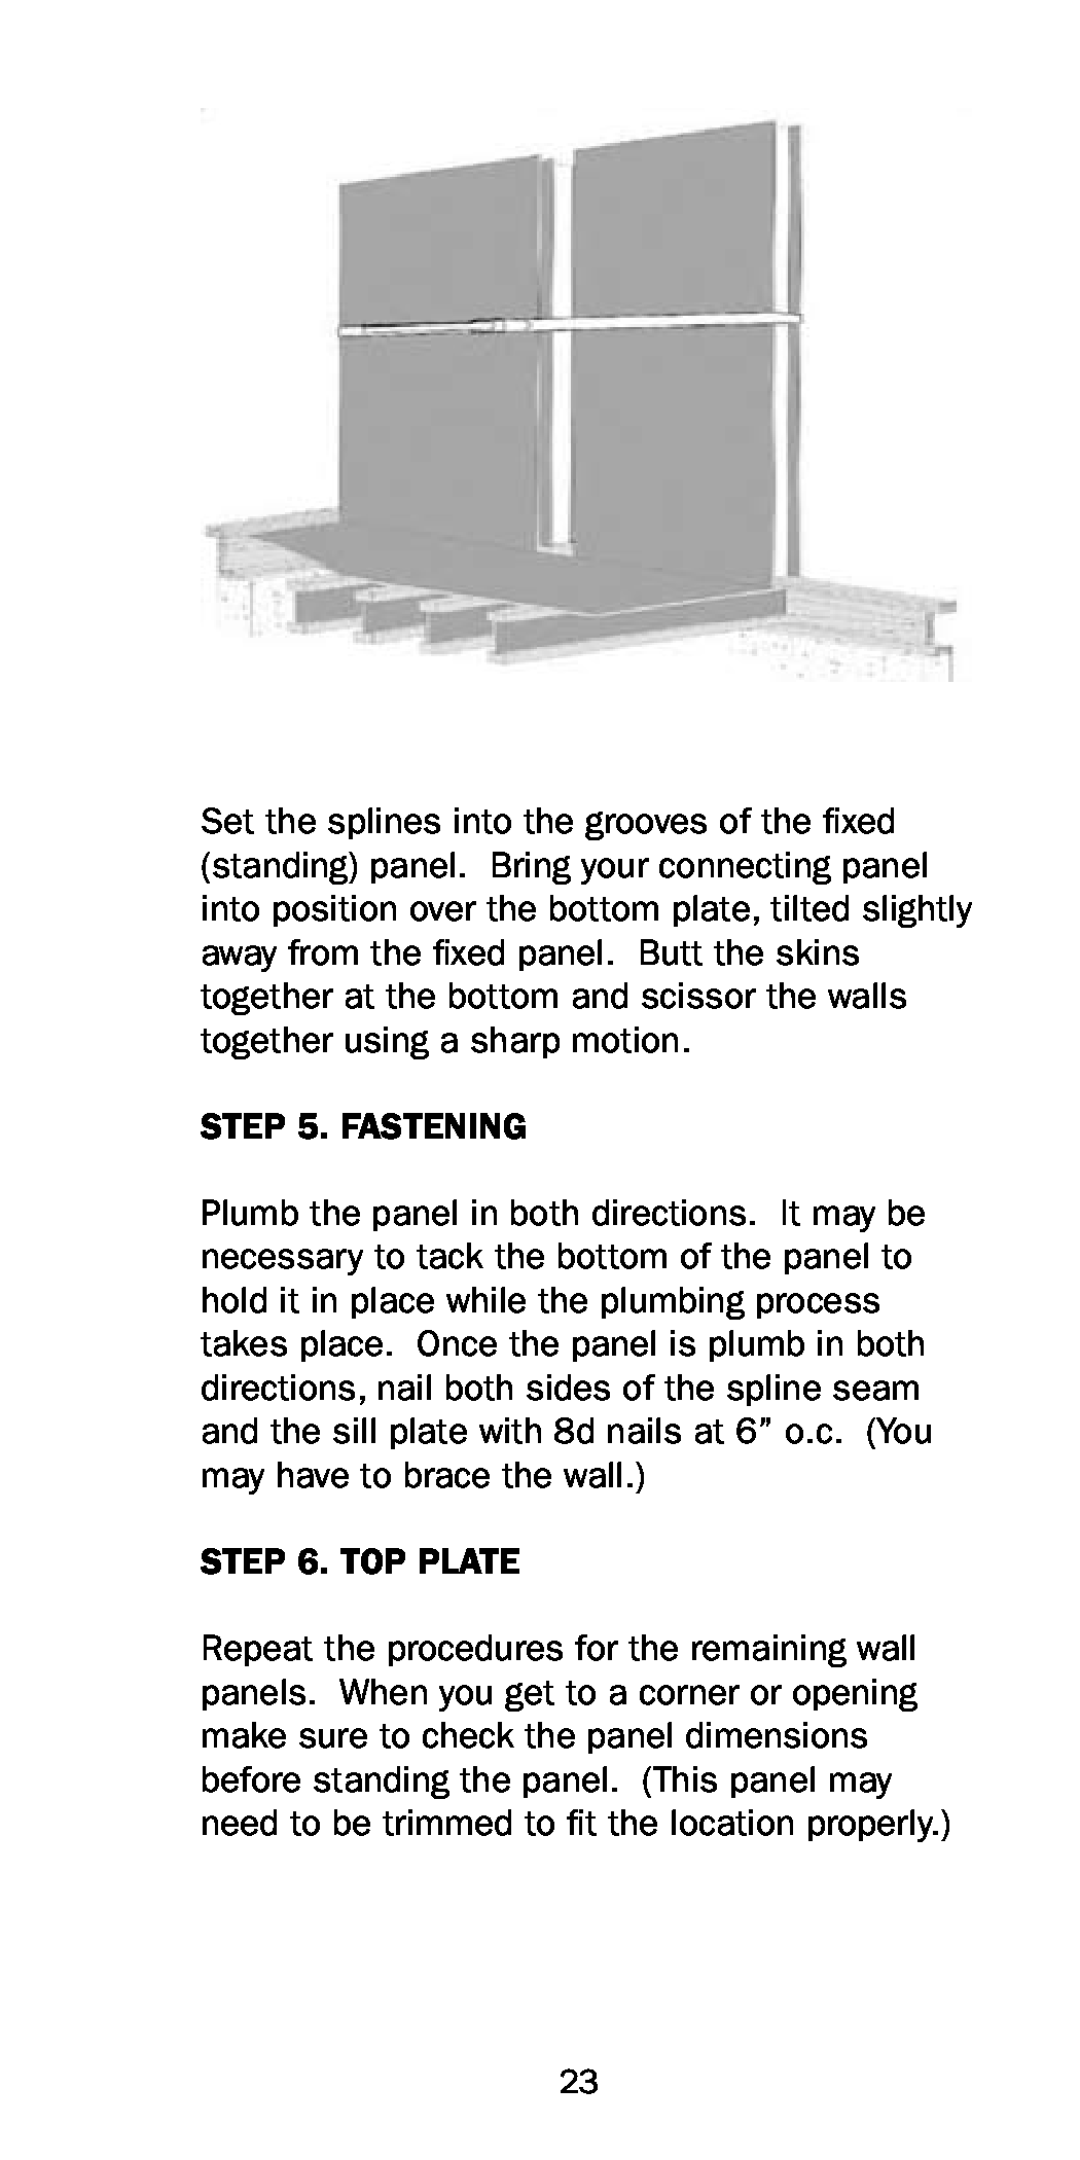 Premier Floors manual Fastening, Top Plate 